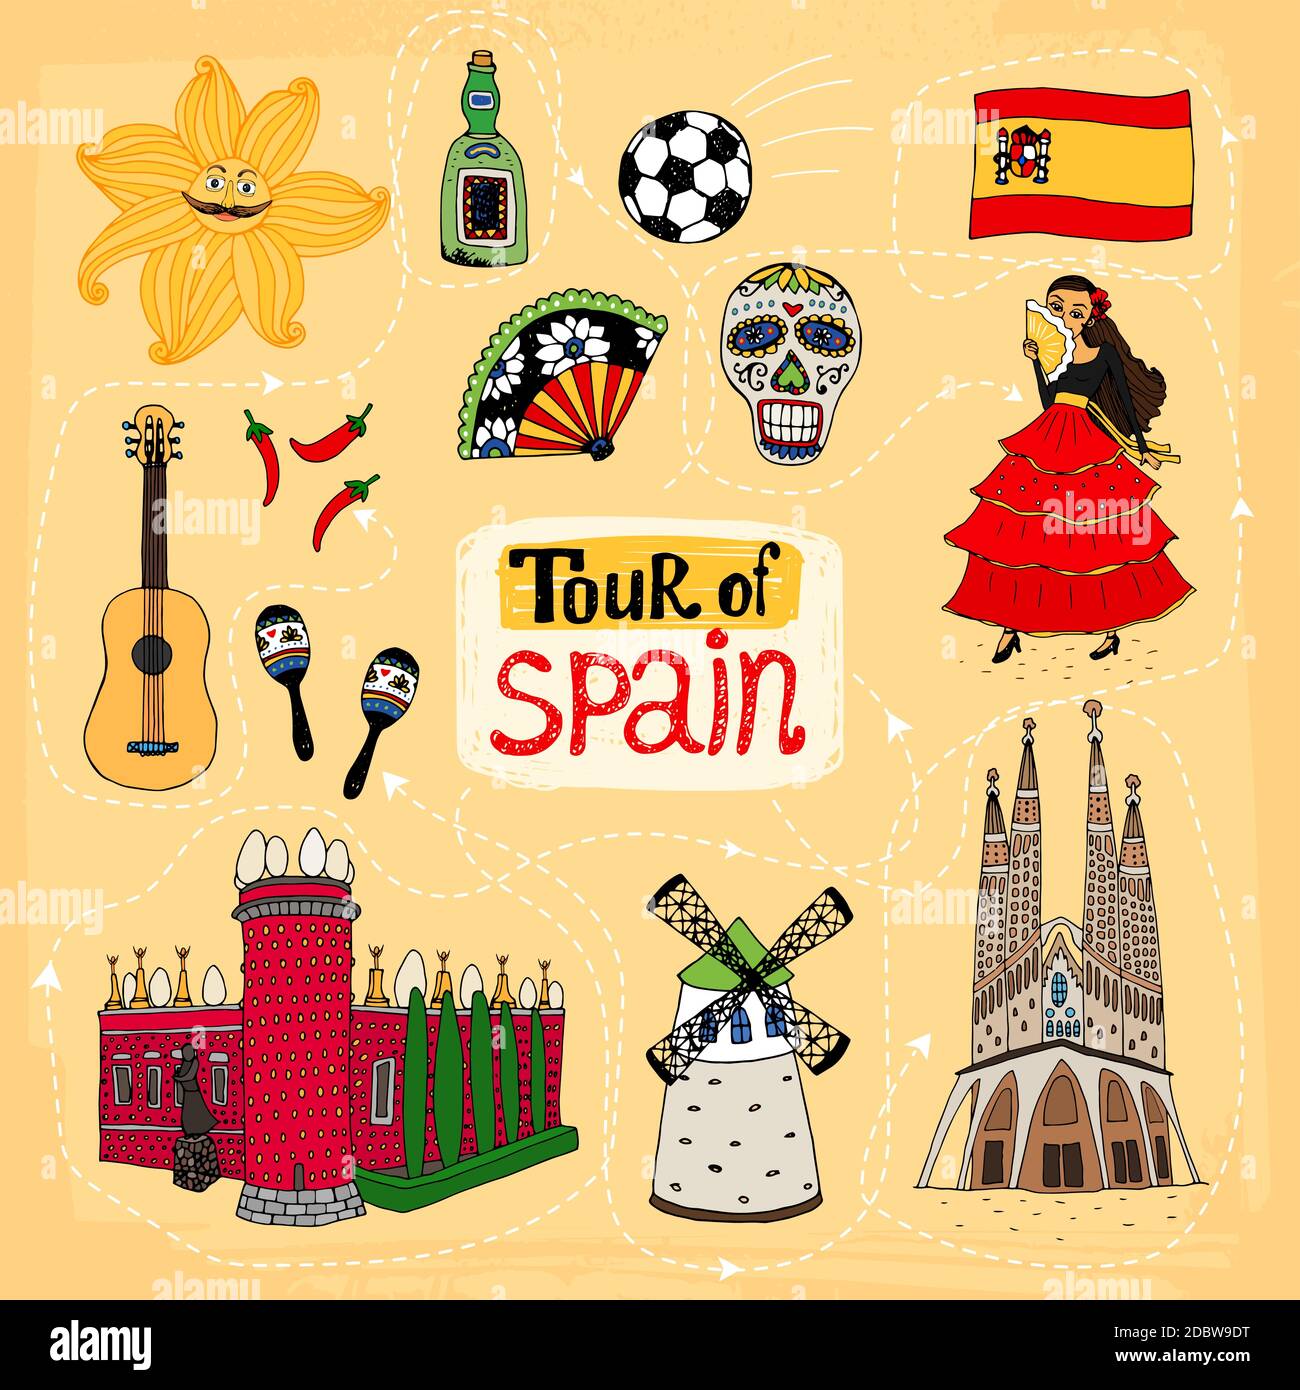 Visite de l'Espagne, illustration dessinée à la main avec des monuments célèbres et culturels Traditions, dont la Sagrada Familia, un moulin à vent danseur de flamenco crâne de Illustration de Vecteur